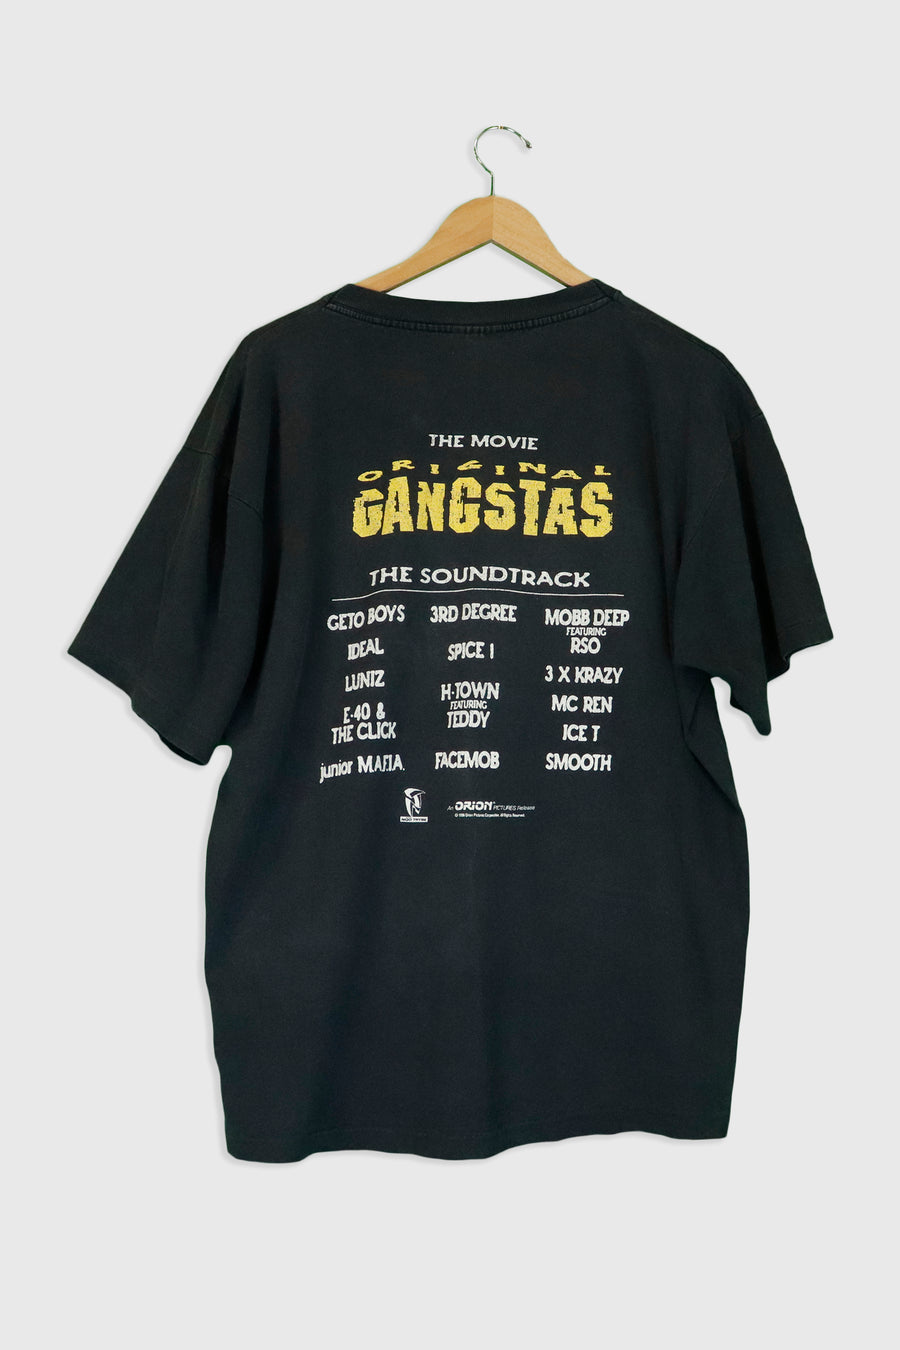 Vintage 1996 OG Original Gangsters Movie Soundtrack T Shirt Sz XL